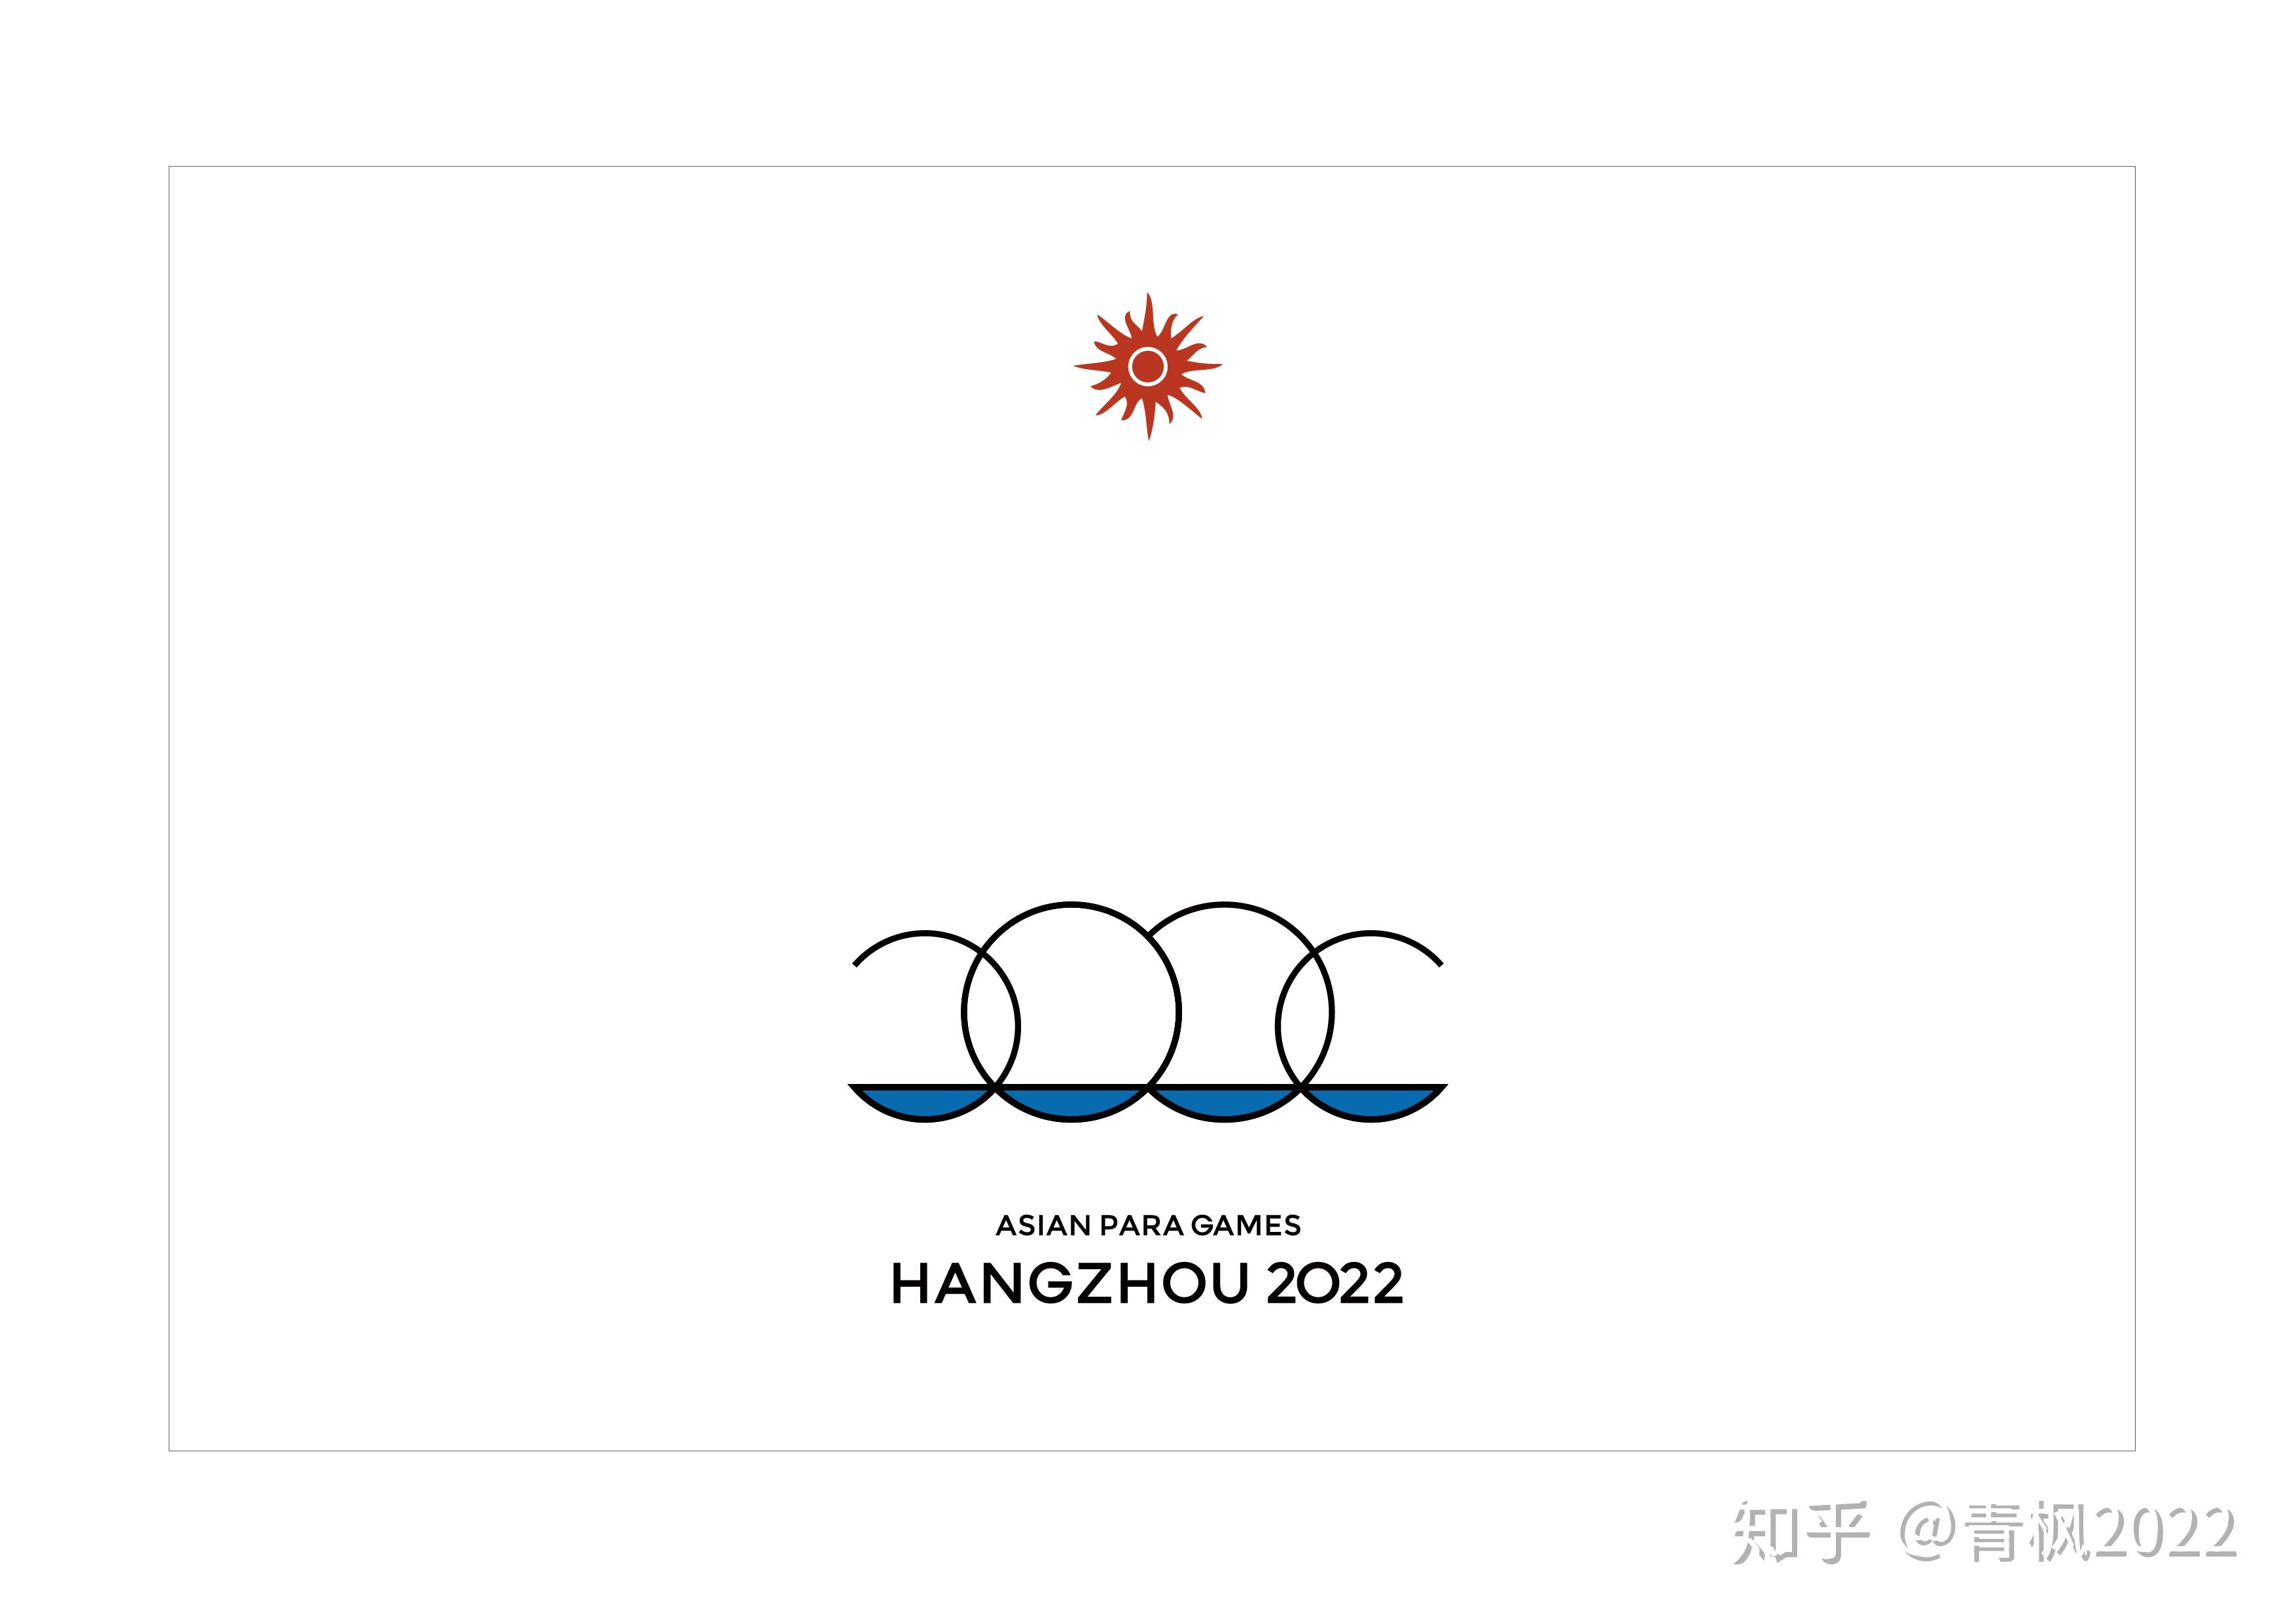 杭州亚运会会徽 设计图片